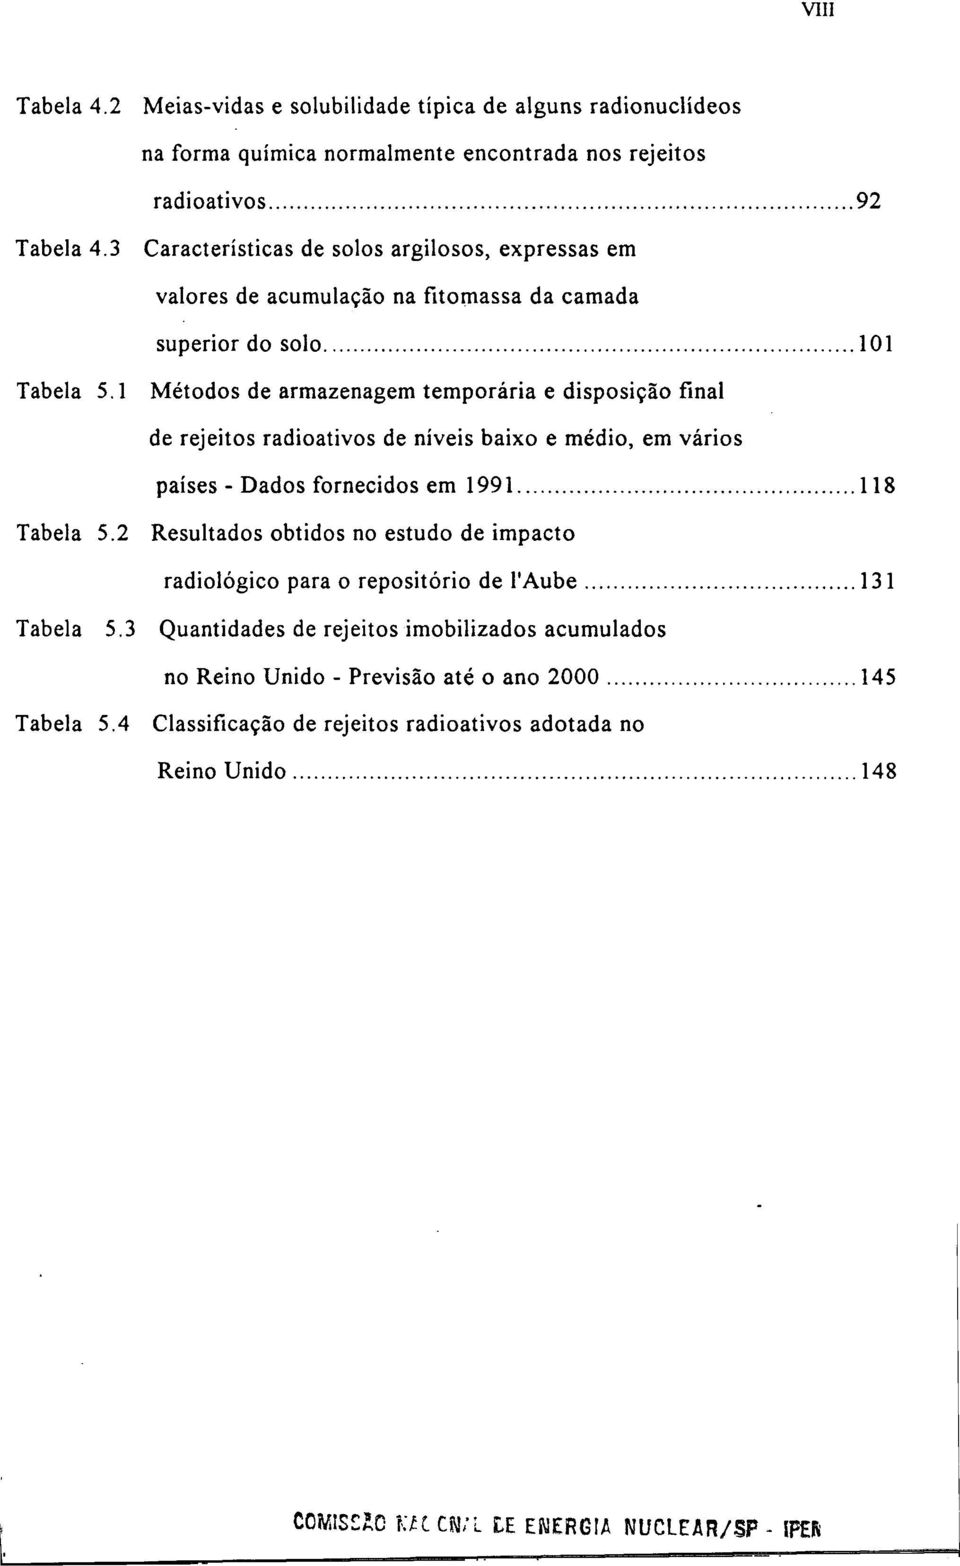 1 Métodos de armazenagem temporária e disposição final de rejeitos radioativos de níveis baixo e médio, em vários países - Dados fornecidos em 1991 118 Tabela 5.